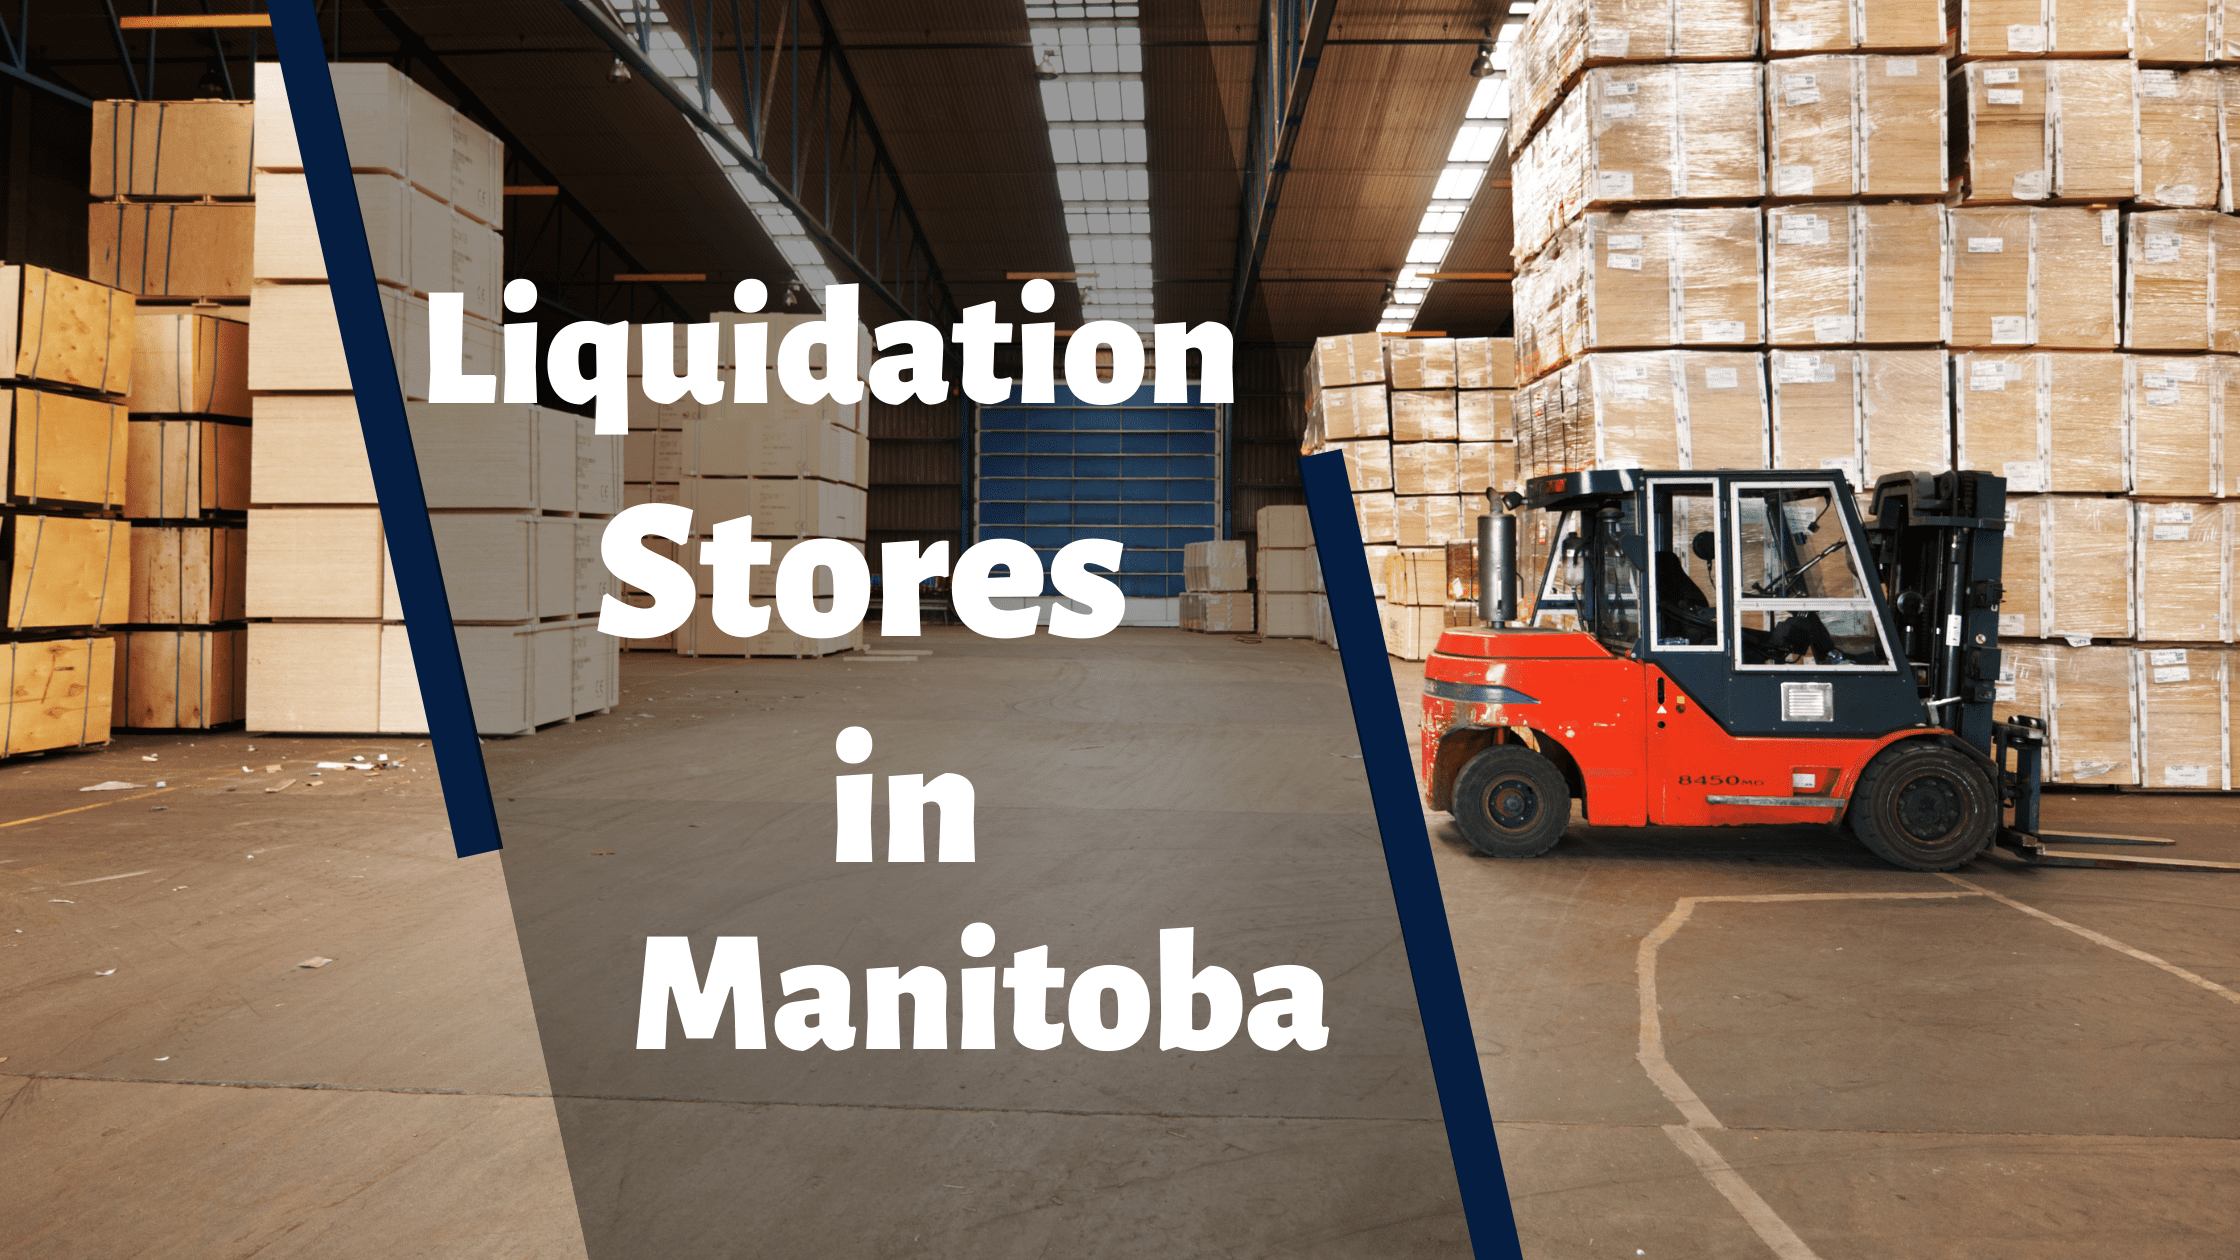 Liquidation Stores in Manitoba